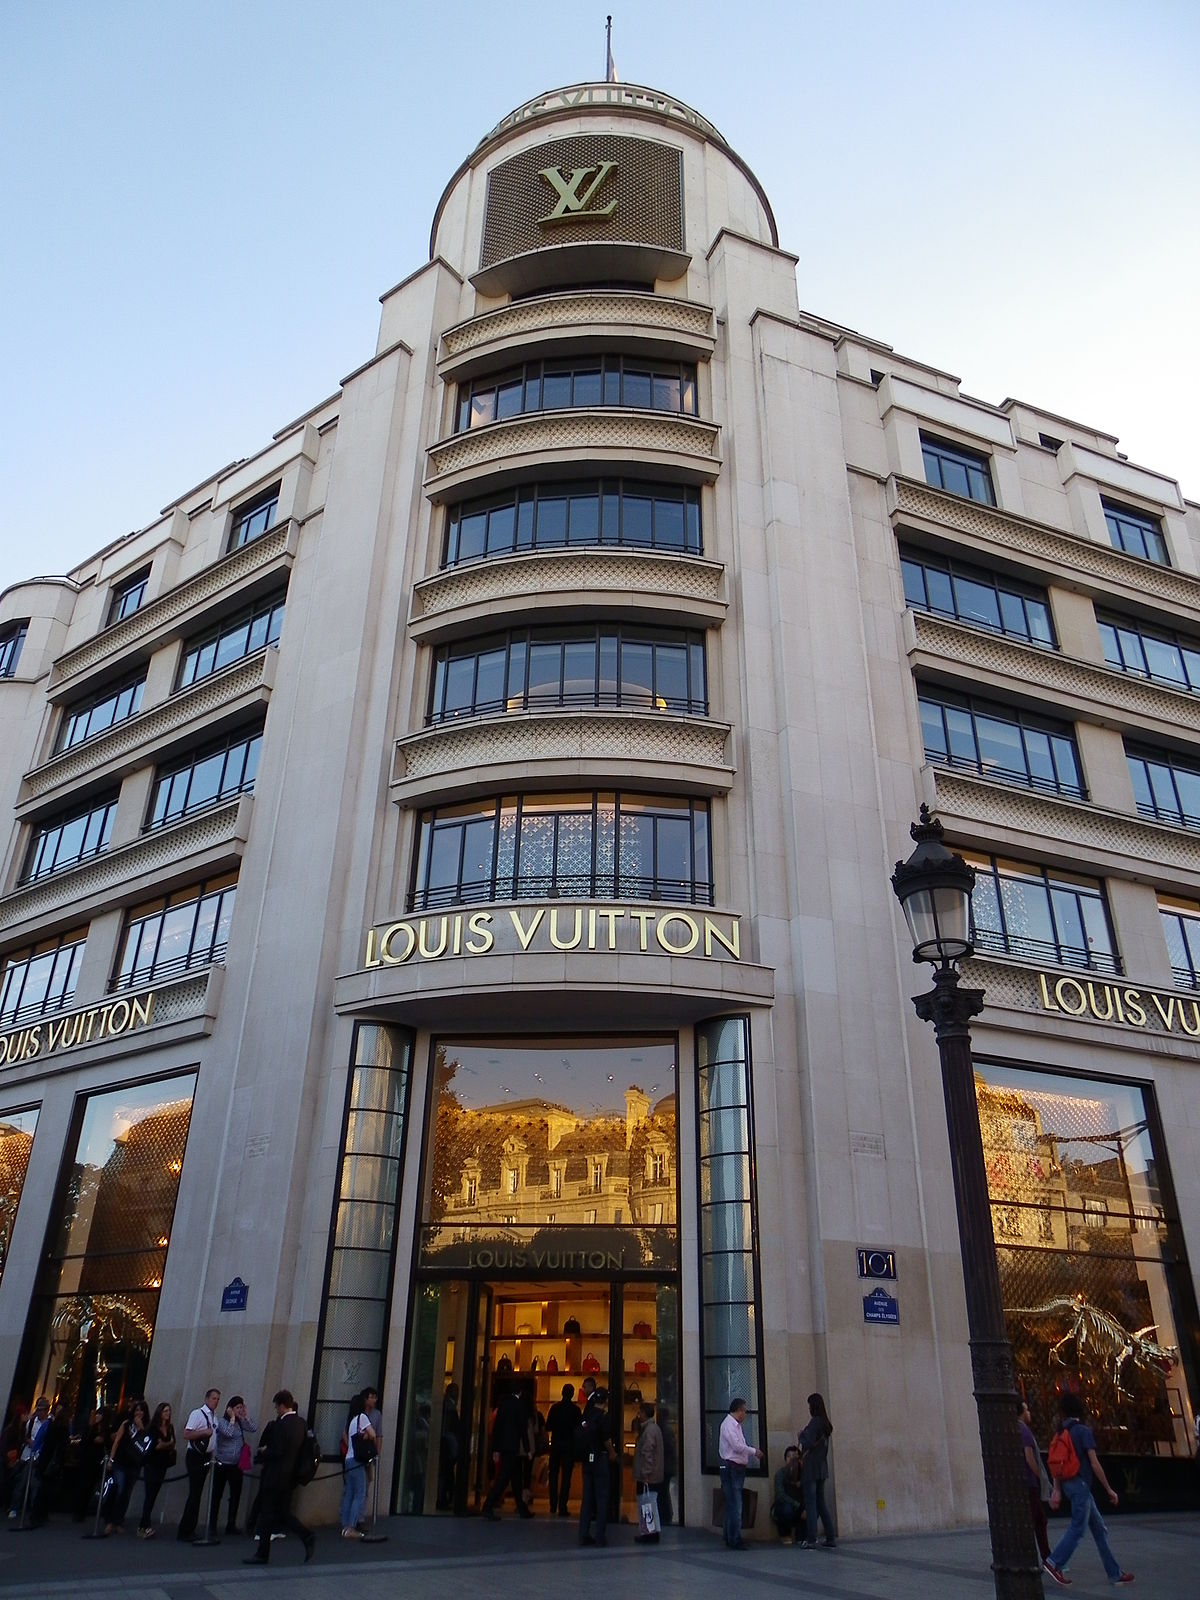 The Louis Vuitton store Champs Elysees in Paris